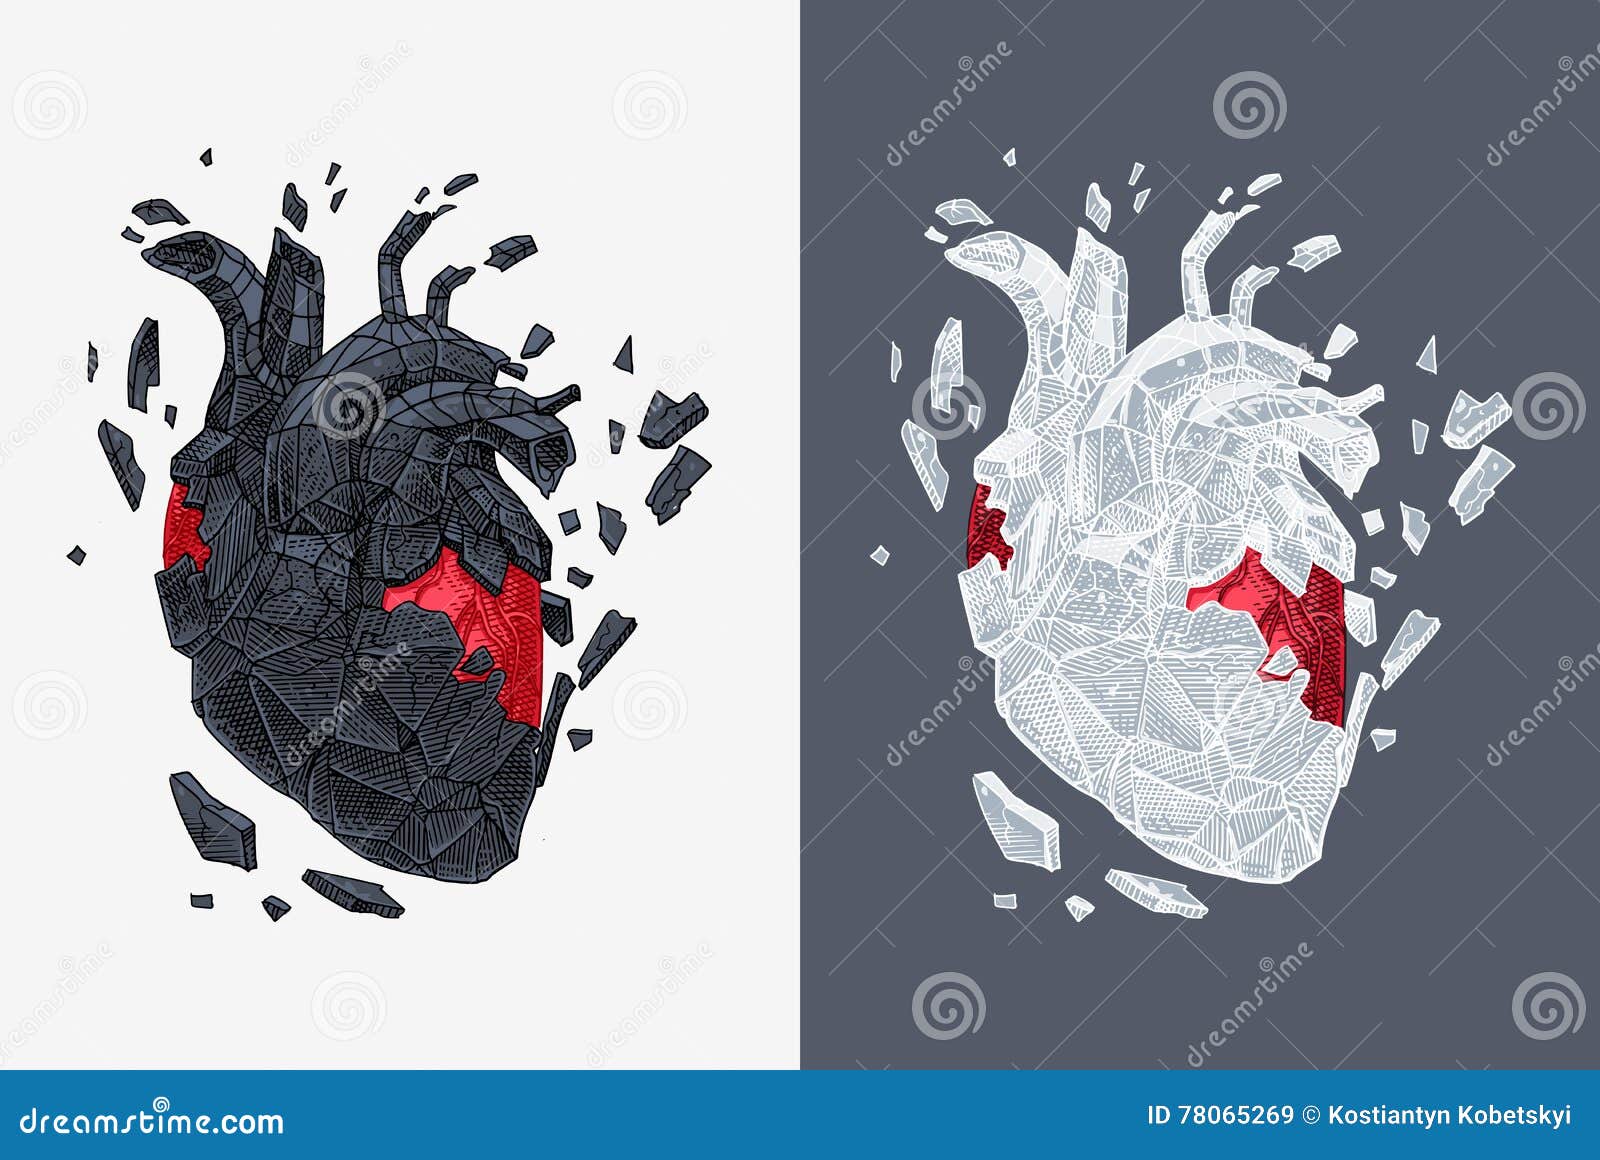 Превращаю сердце в камень. Разбитое сердце Анатомическое. Сердце Анатомическое оазбиток. Расколотое Анатомическое сердце. Разбитое сердце настоящее.